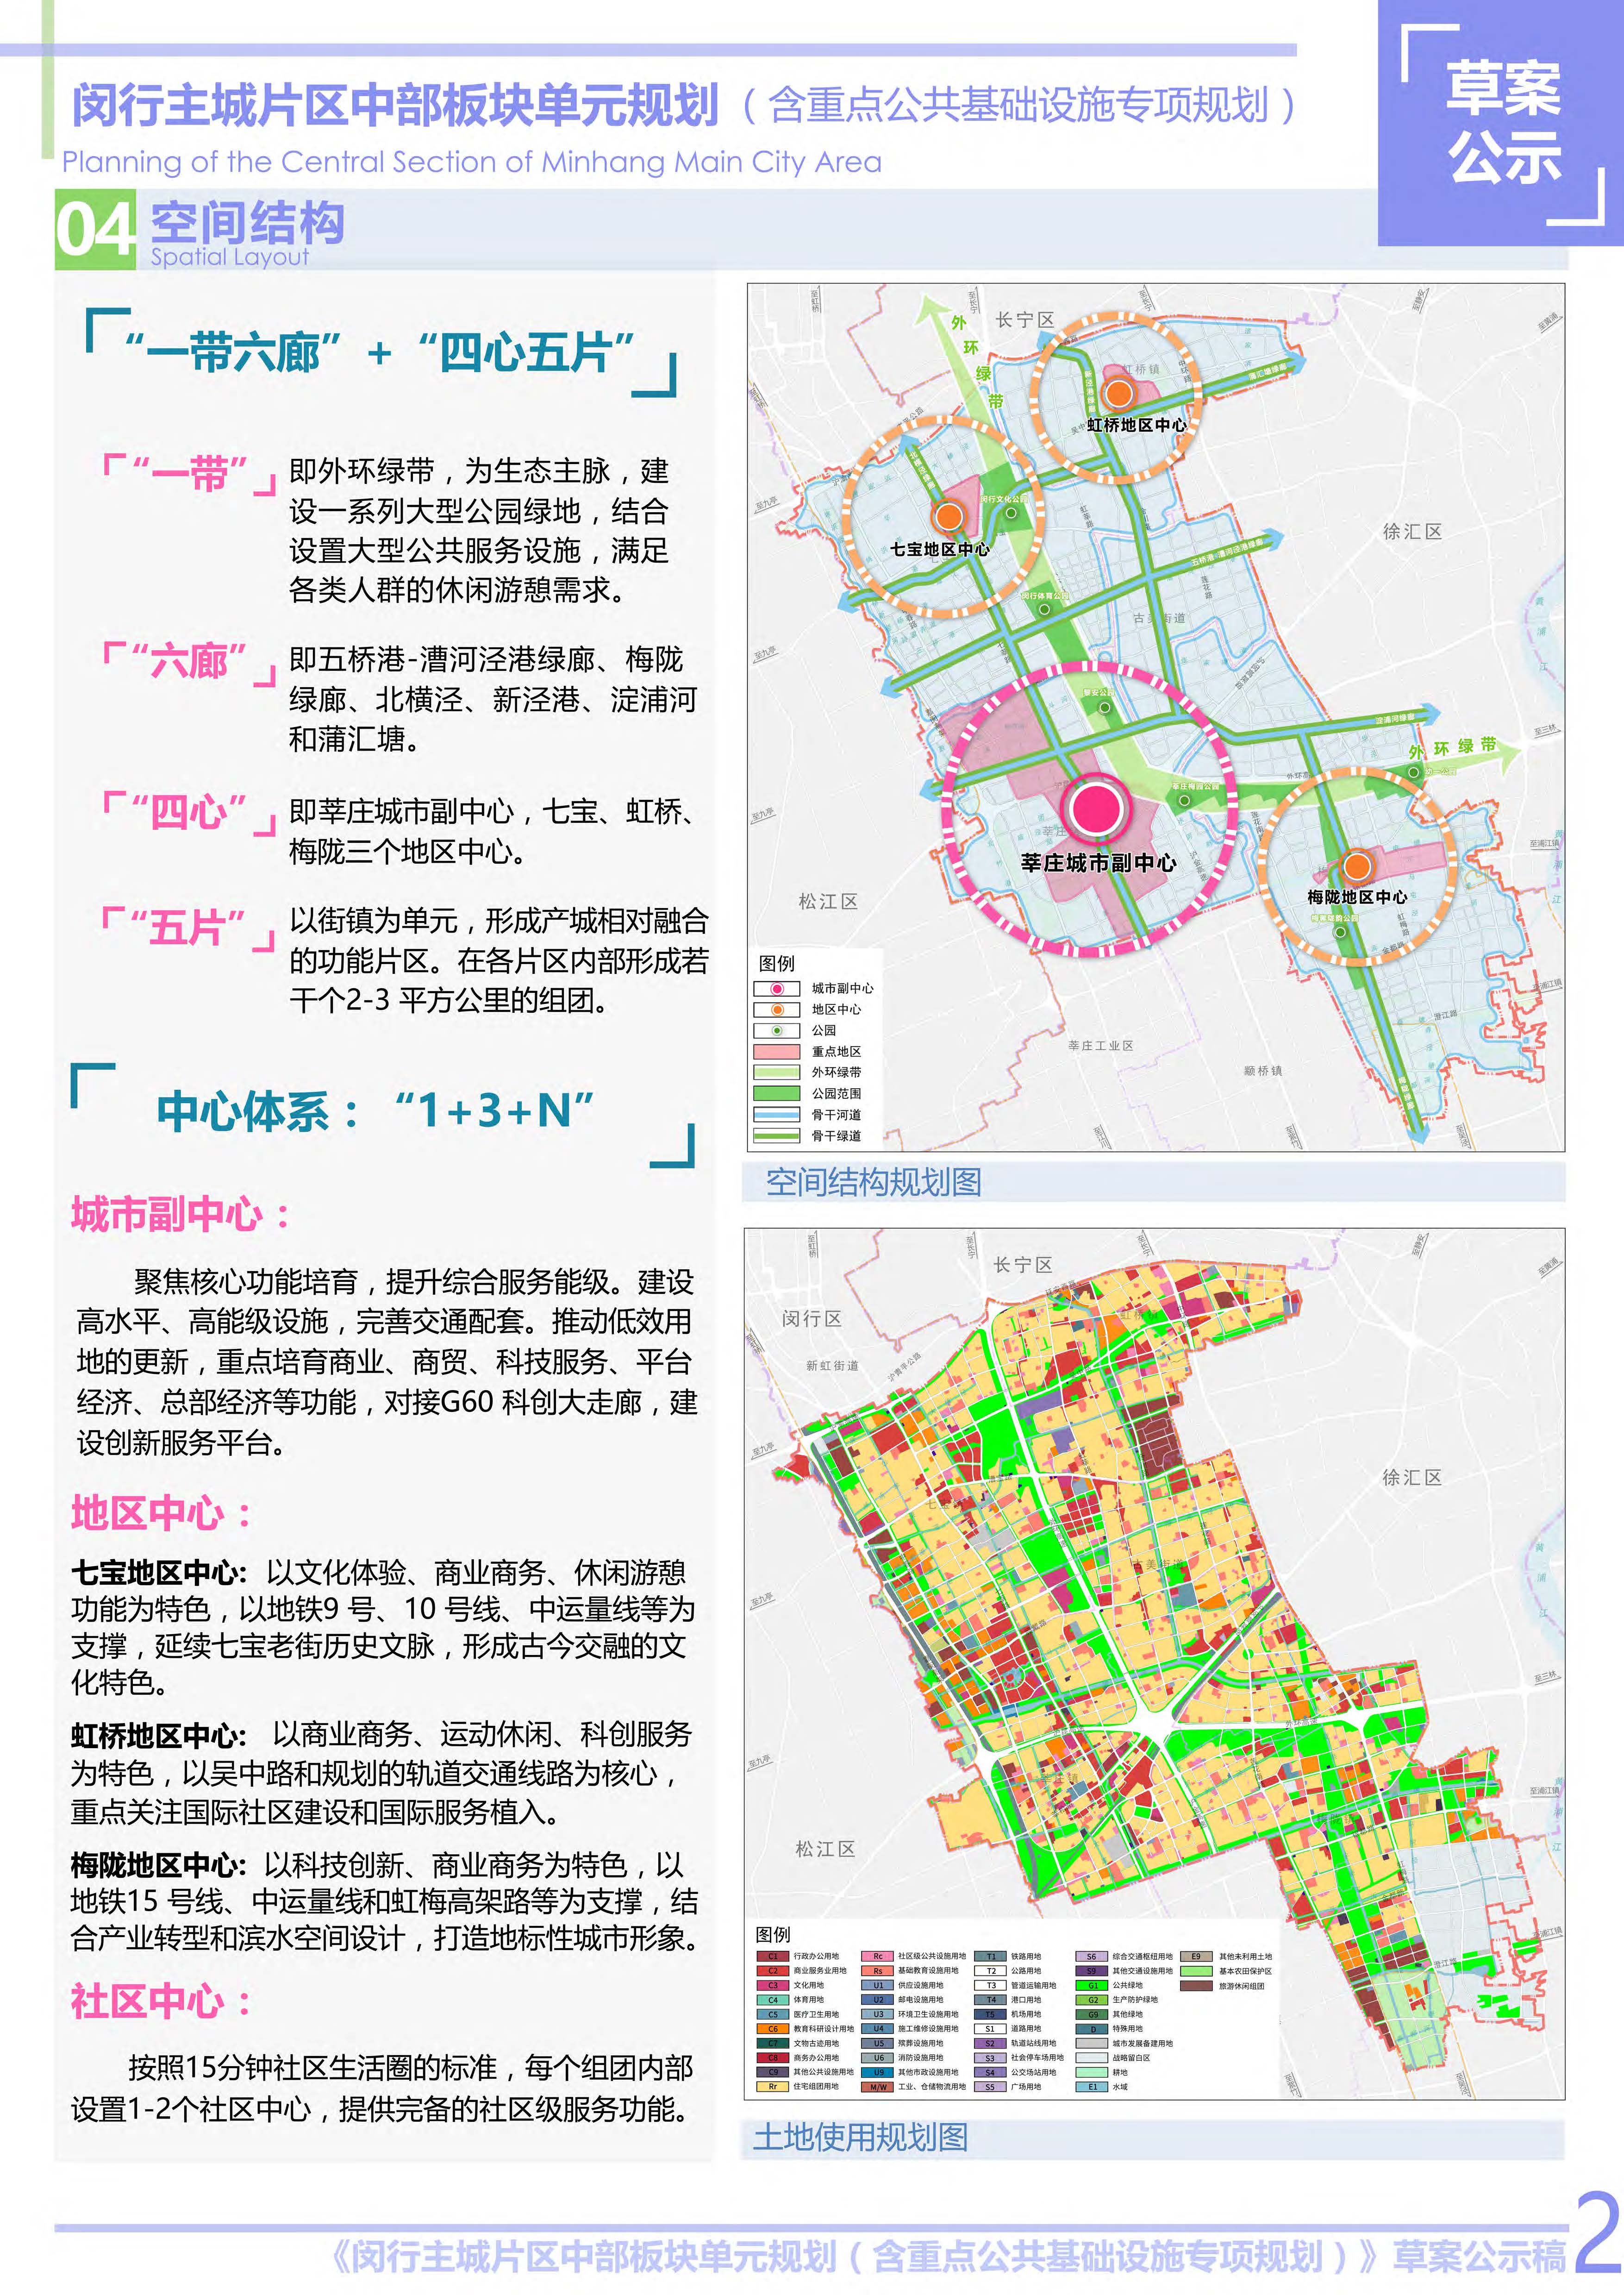 上海市闵行主城片区中部板块单元规划草案公示稿-草案公示公告3.jpg